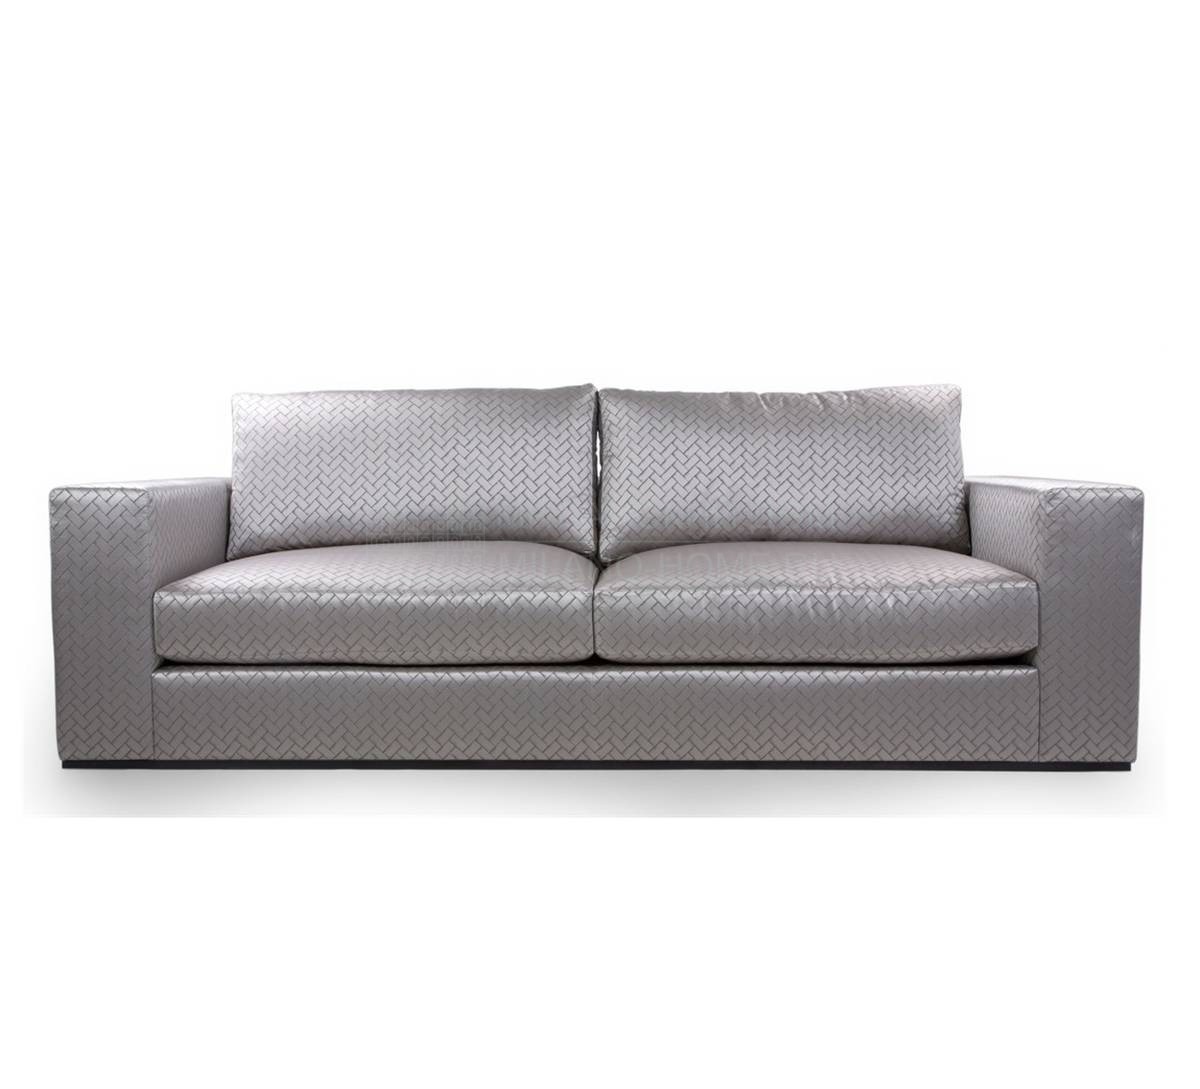 Прямой диван Braque из Великобритании фабрики THE SOFA & CHAIR Company